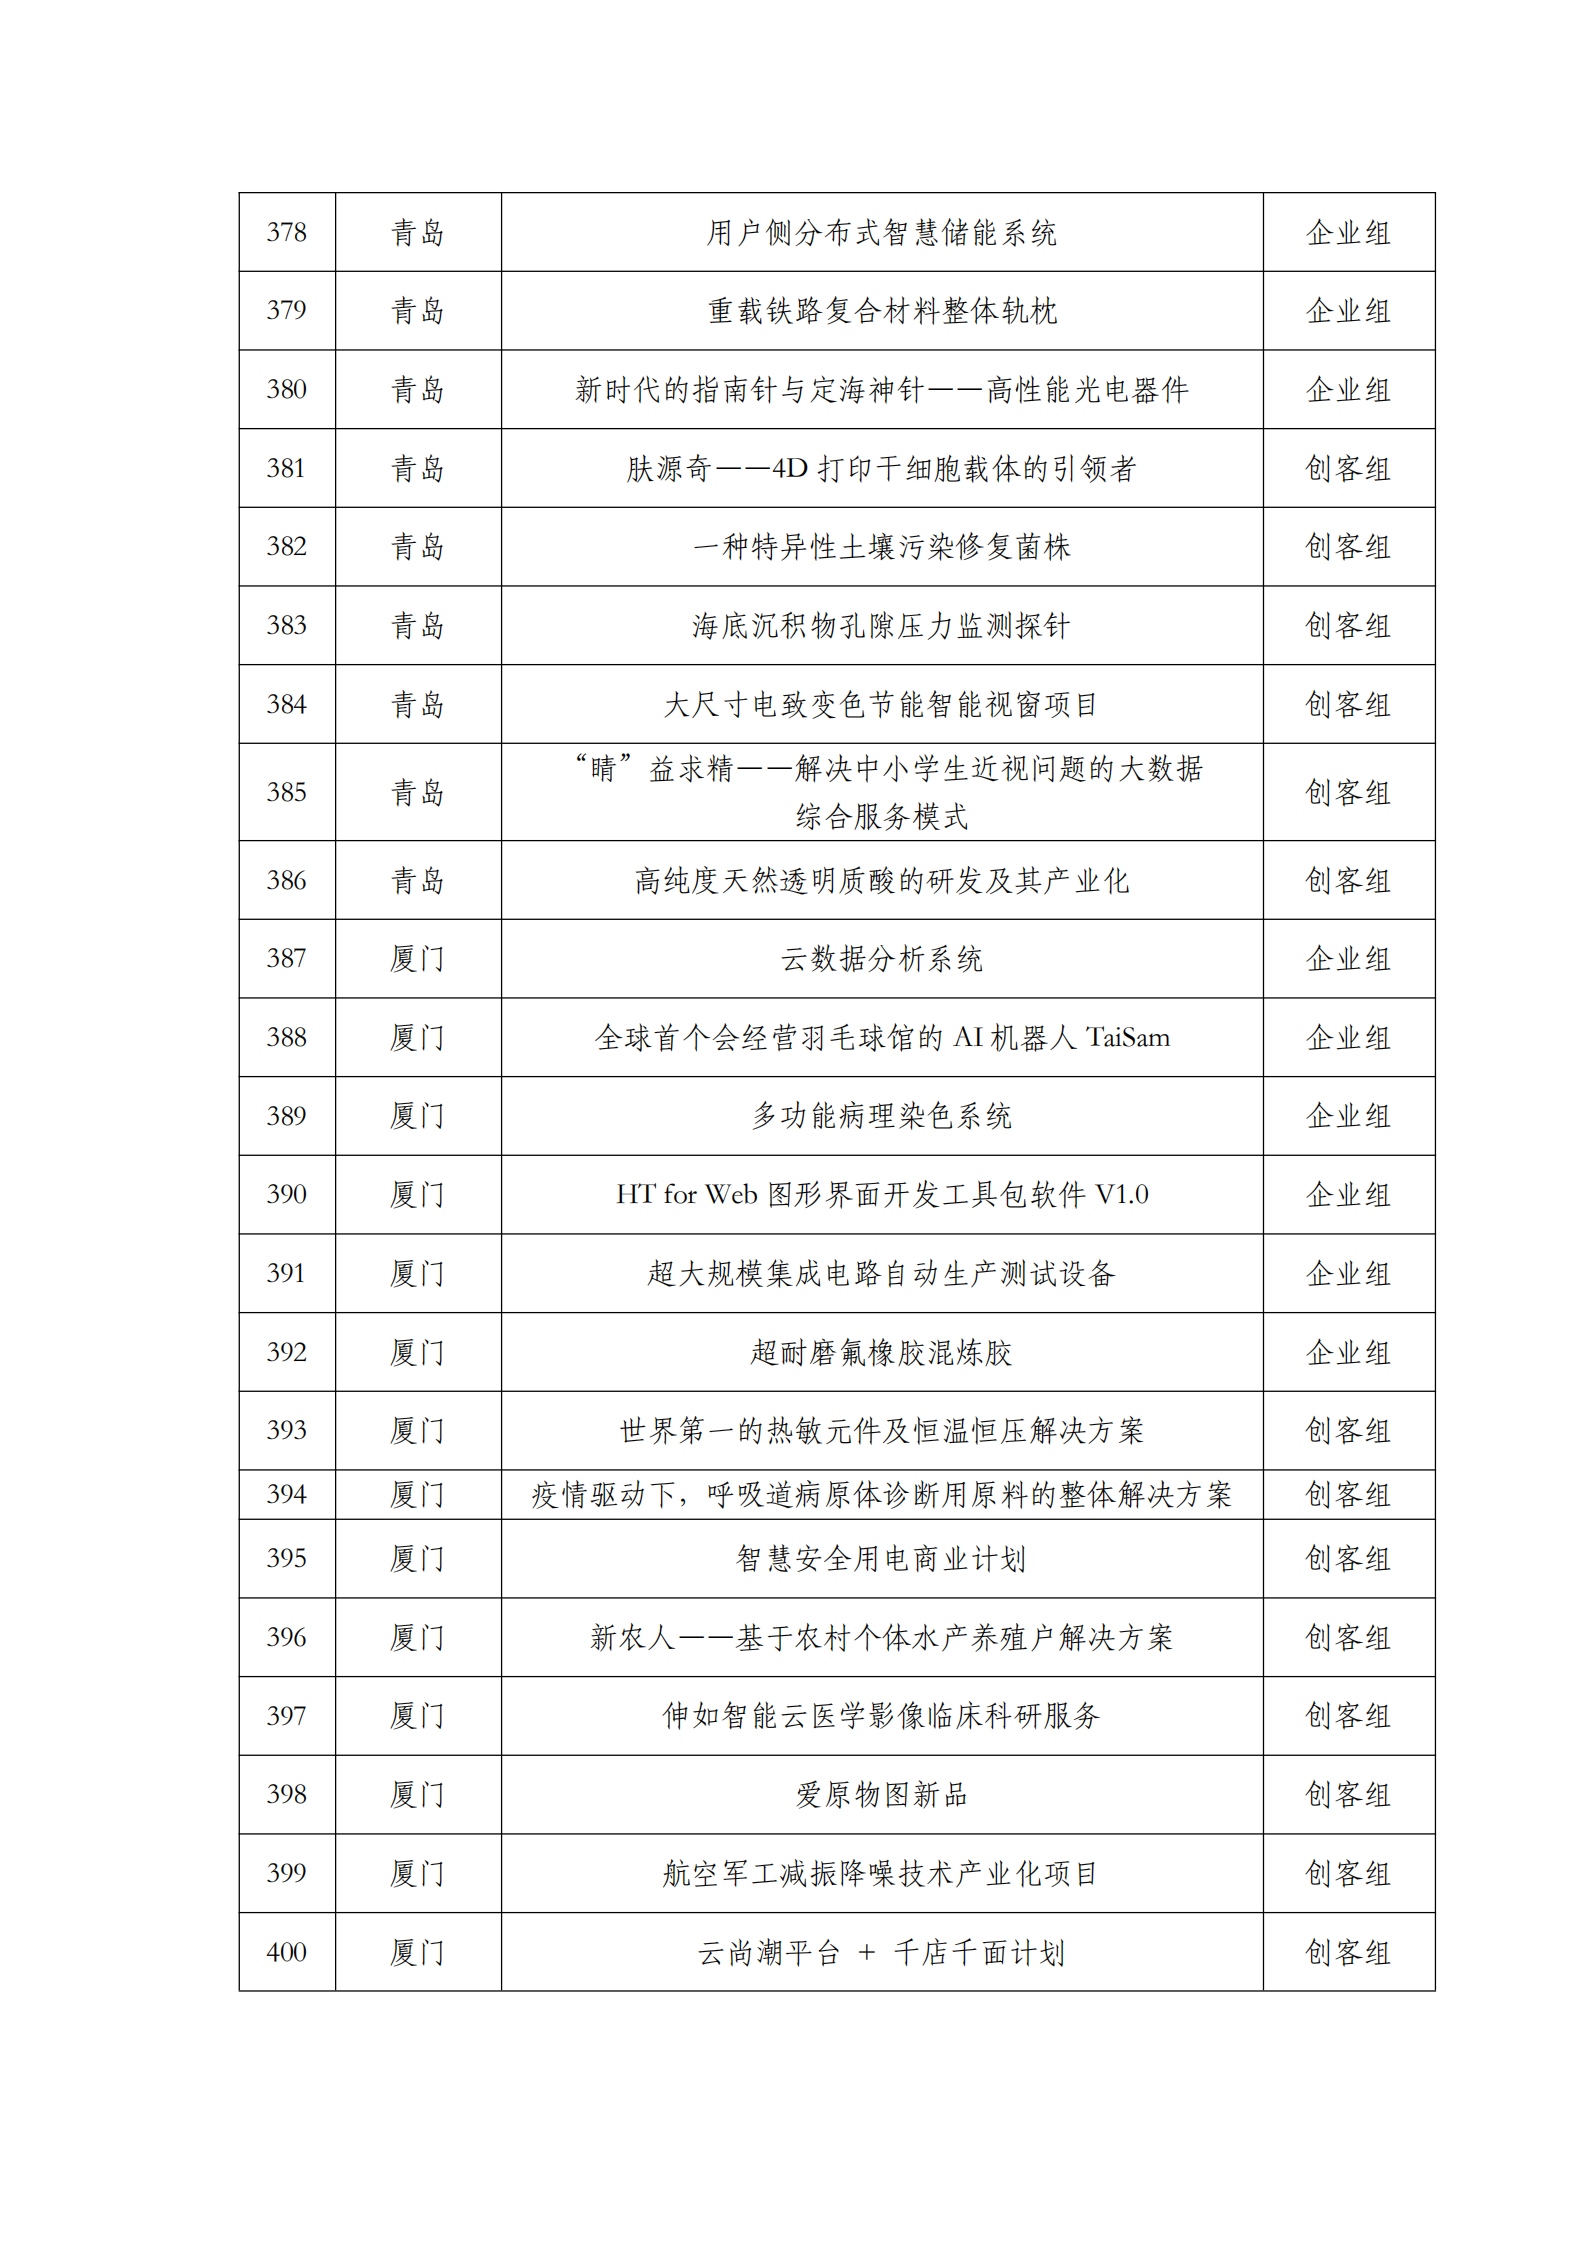 第六届“创客中国”中小企业创新创业大赛500强公示名单_17.png